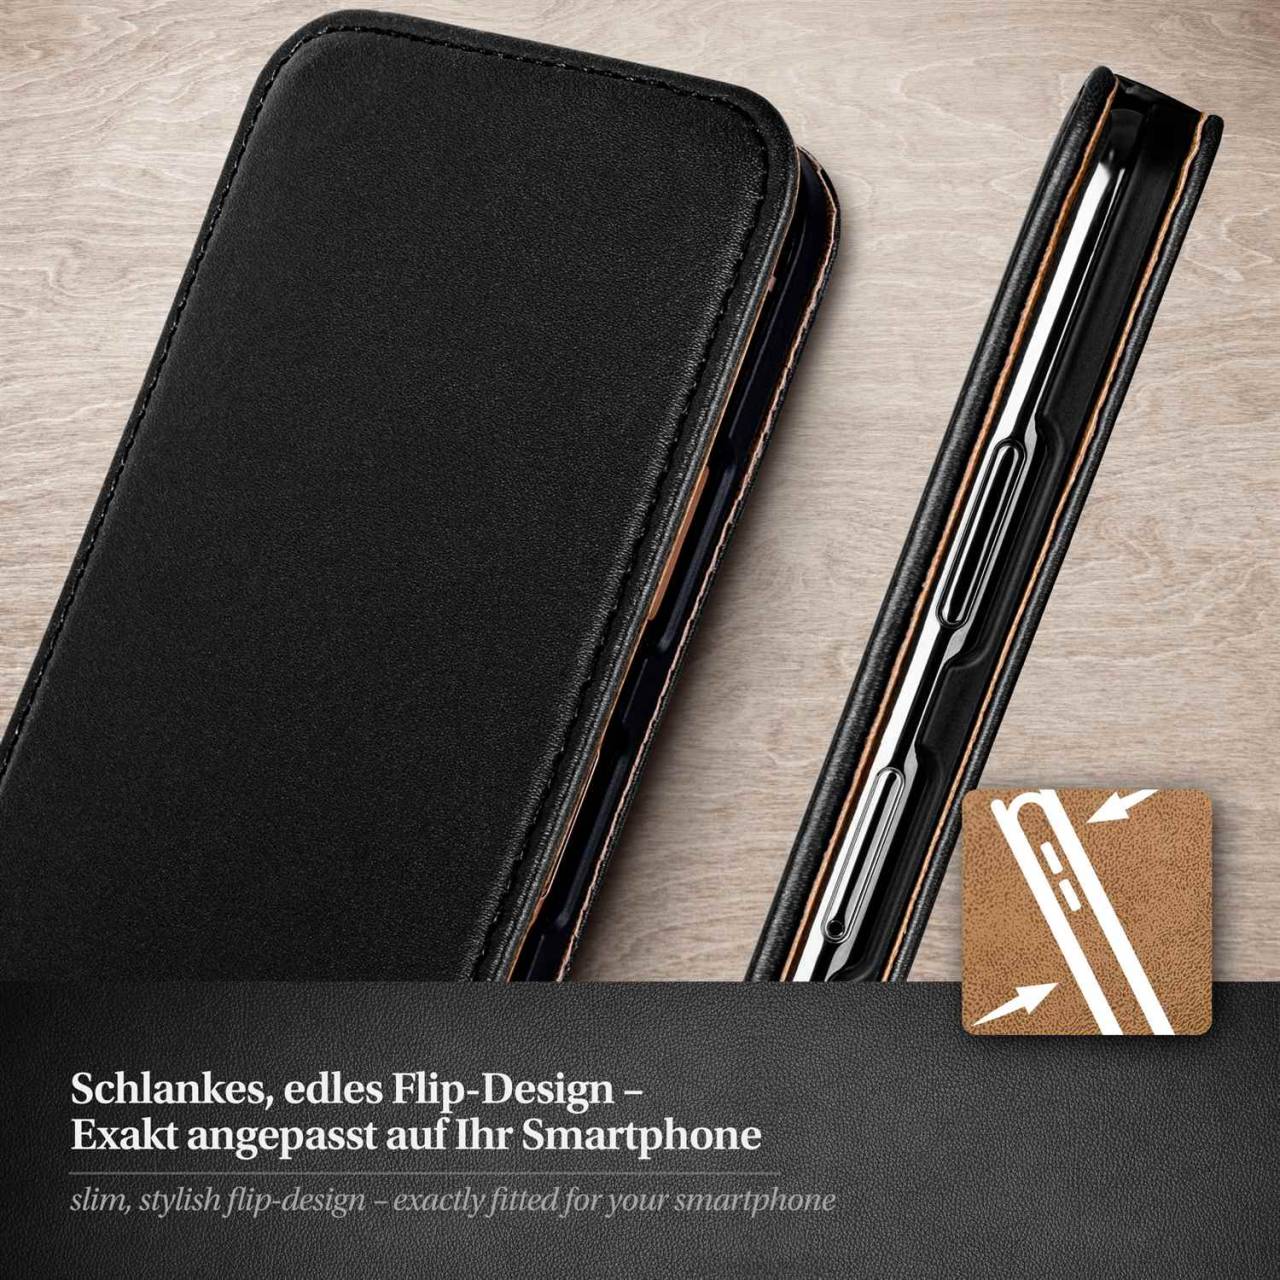 moex Flip Case für HTC One E8 – PU Lederhülle mit 360 Grad Schutz, klappbar